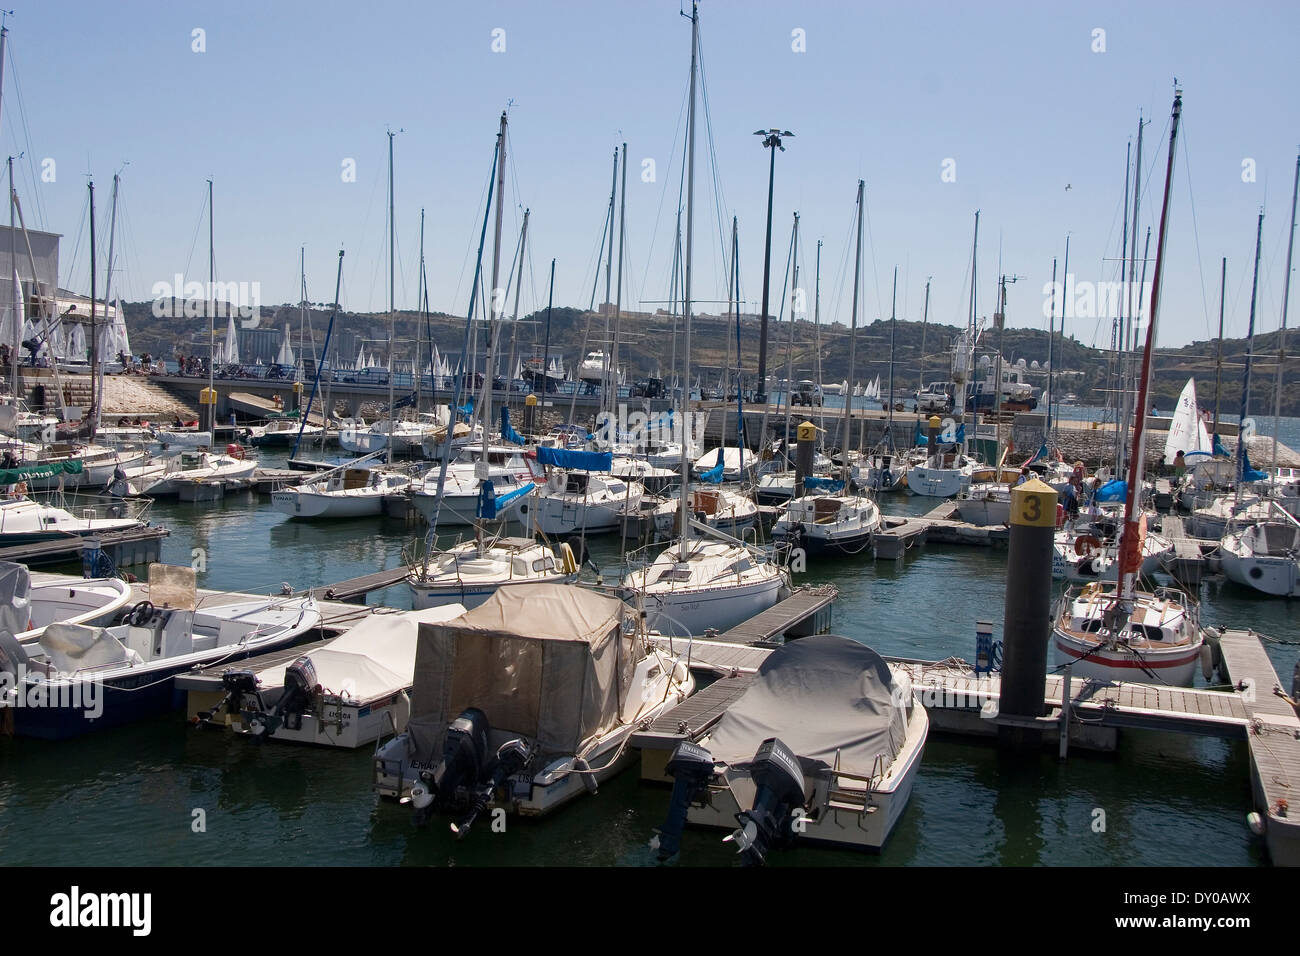 Doca de Santo Amaro, nautical port, belem, lisbon, portugal Stock Photo